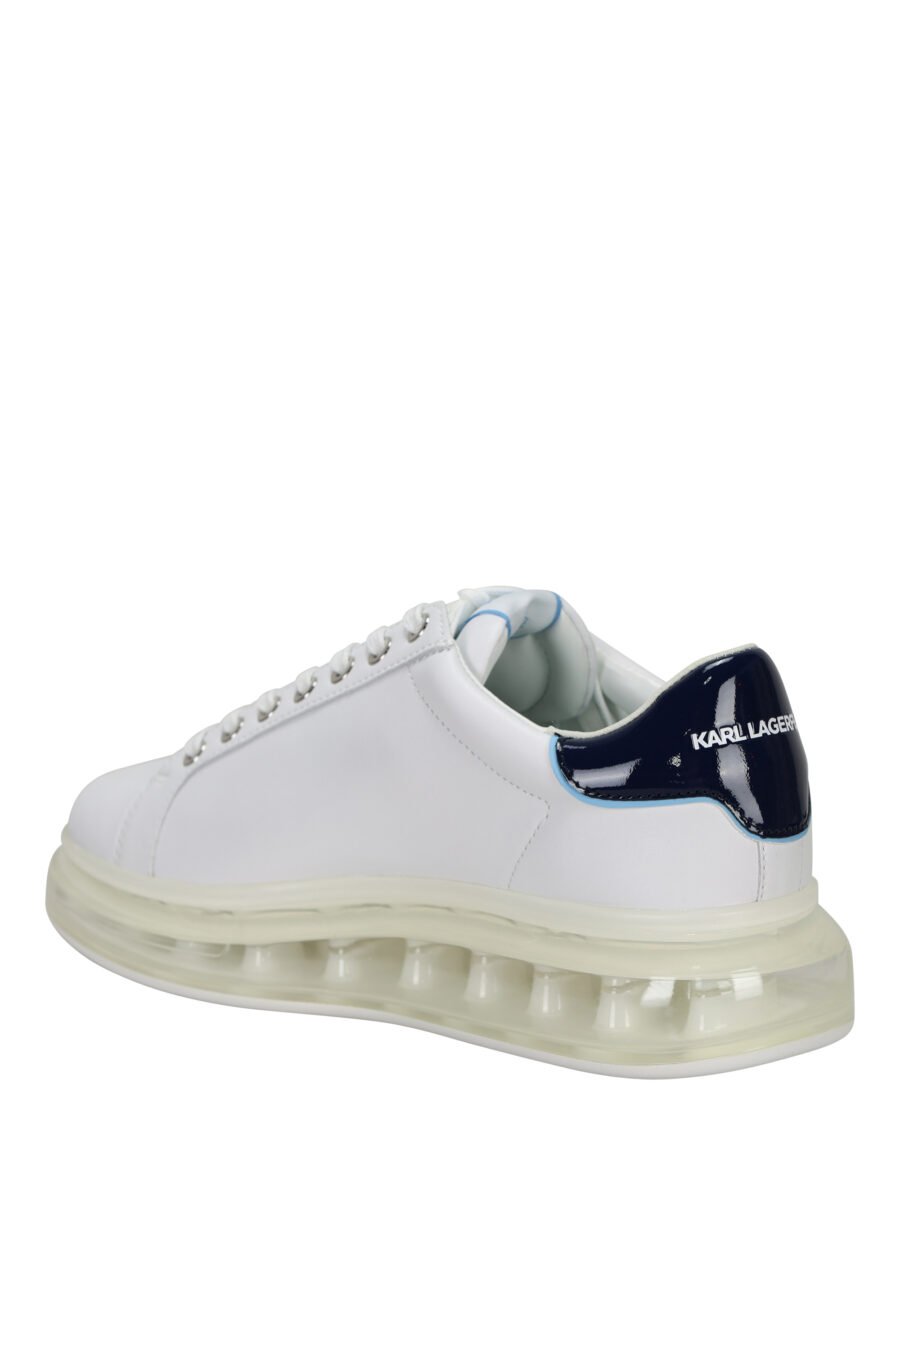 Zapatillas blancas "kapri fushion" con plataforma transparente y minilogo en contorno azul - 5059529396144 3